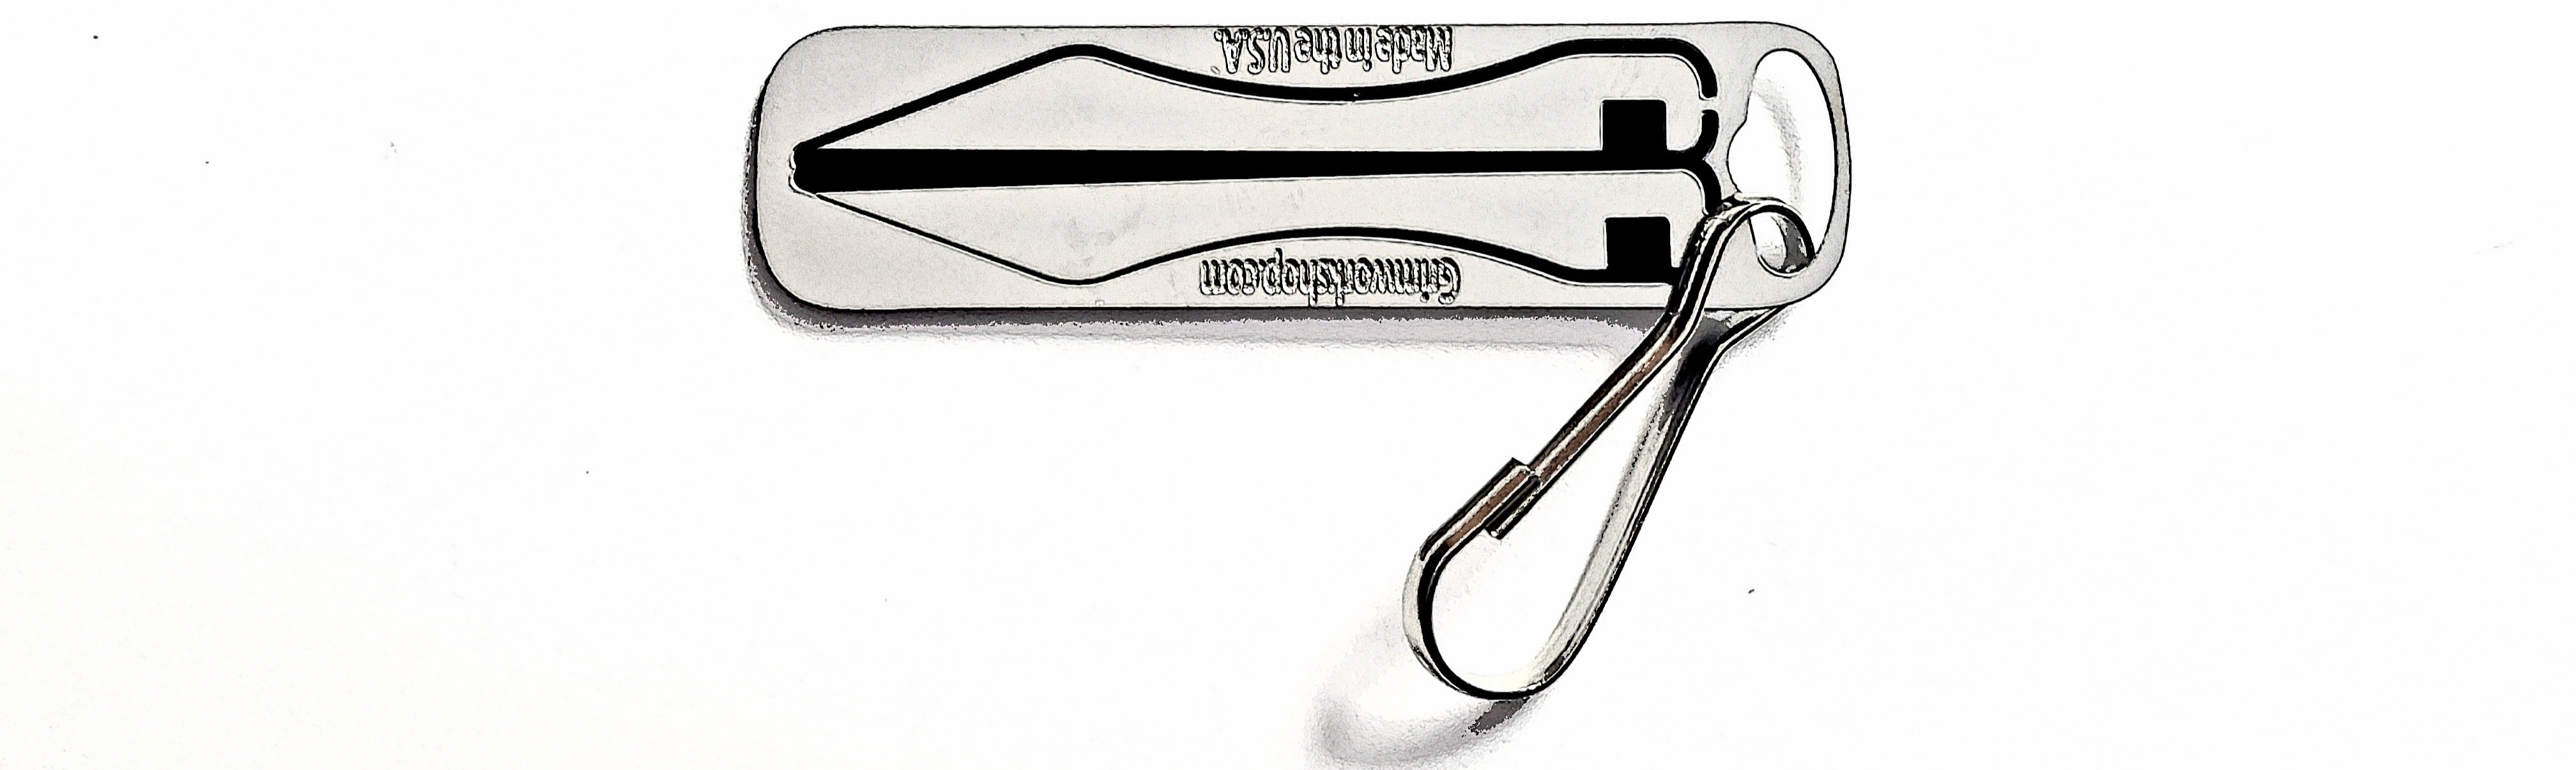 The Worlds Smallest EDC Tweezers : The Pointed Tweezer Keychain Micro Tweezer Tool